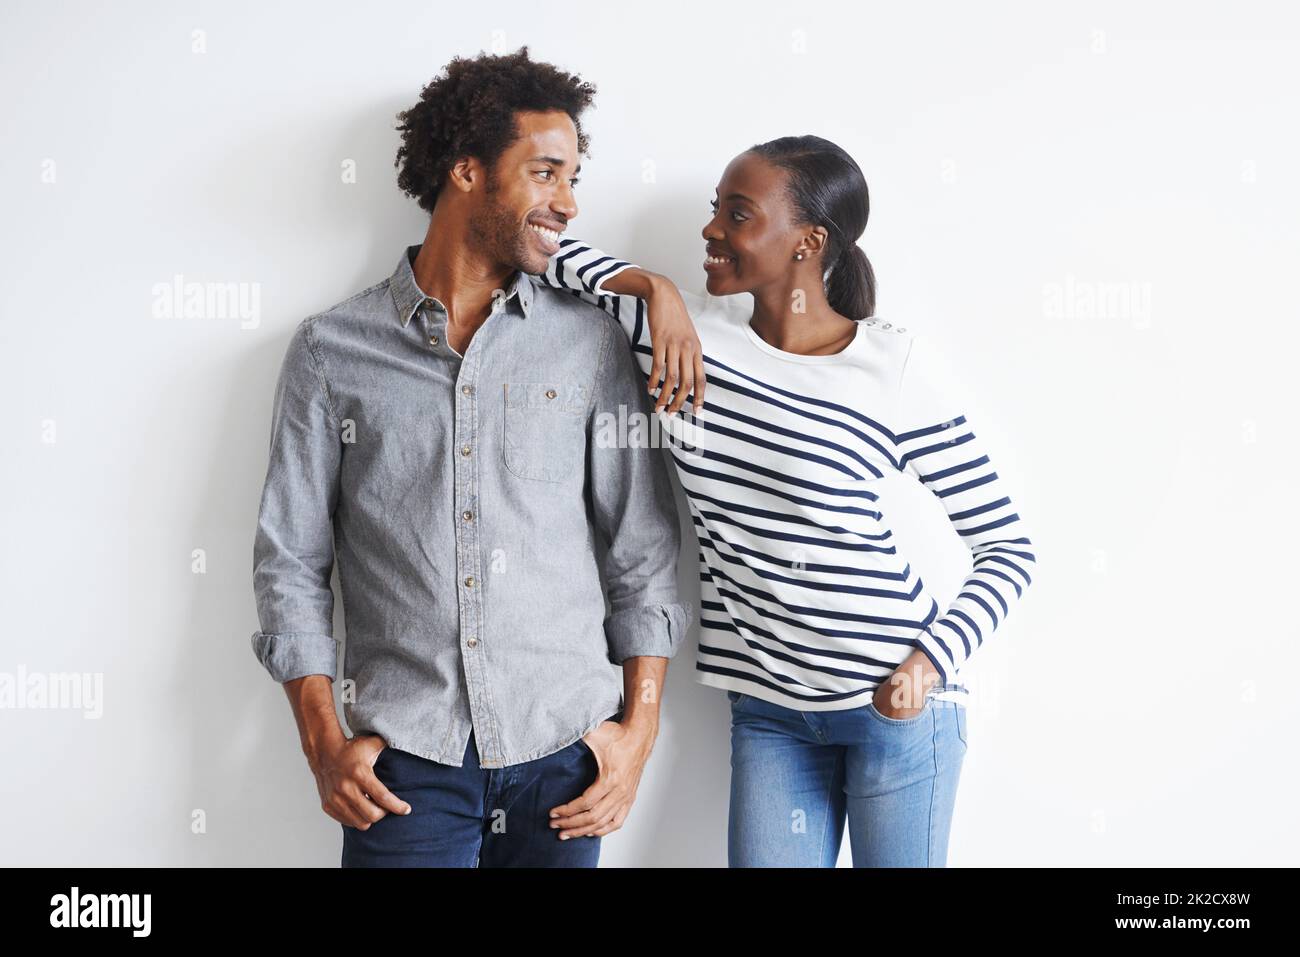 Absolut verführt. Ein glückliches junges Paar, das liebevoll an einer weißen Wand zusammensteht. Stockfoto